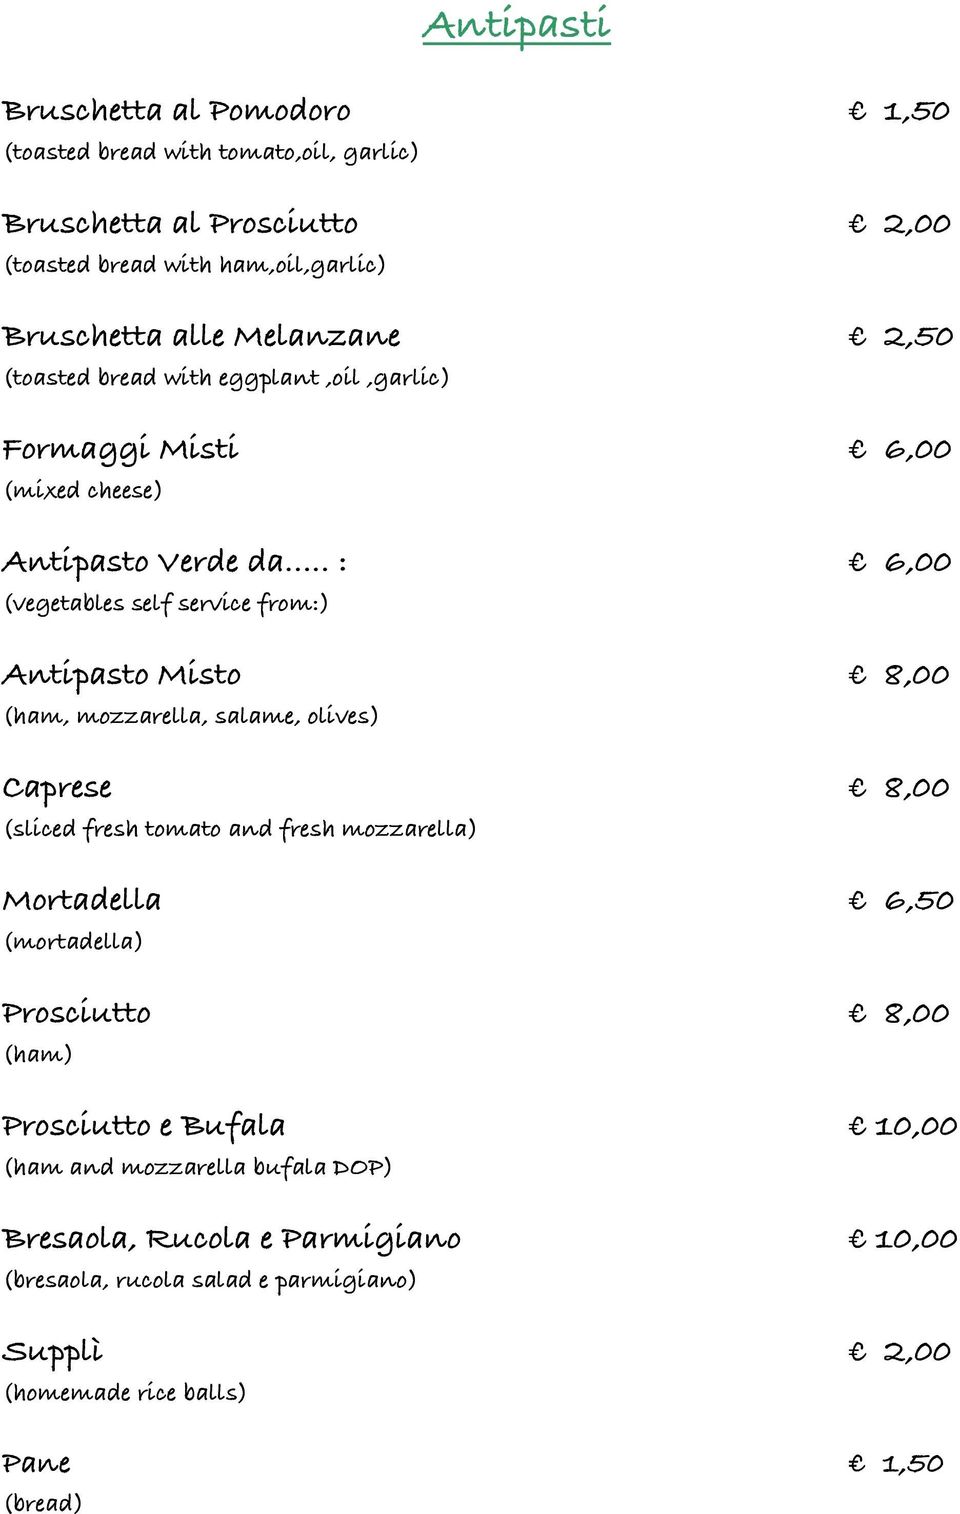 .. : 6,00 (vegetables self service from:) Antipasto Misto 8,00 (ham, mozzarella, salame, olives) Caprese 8,00 (sliced fresh tomato and fresh mozzarella) Mortadella